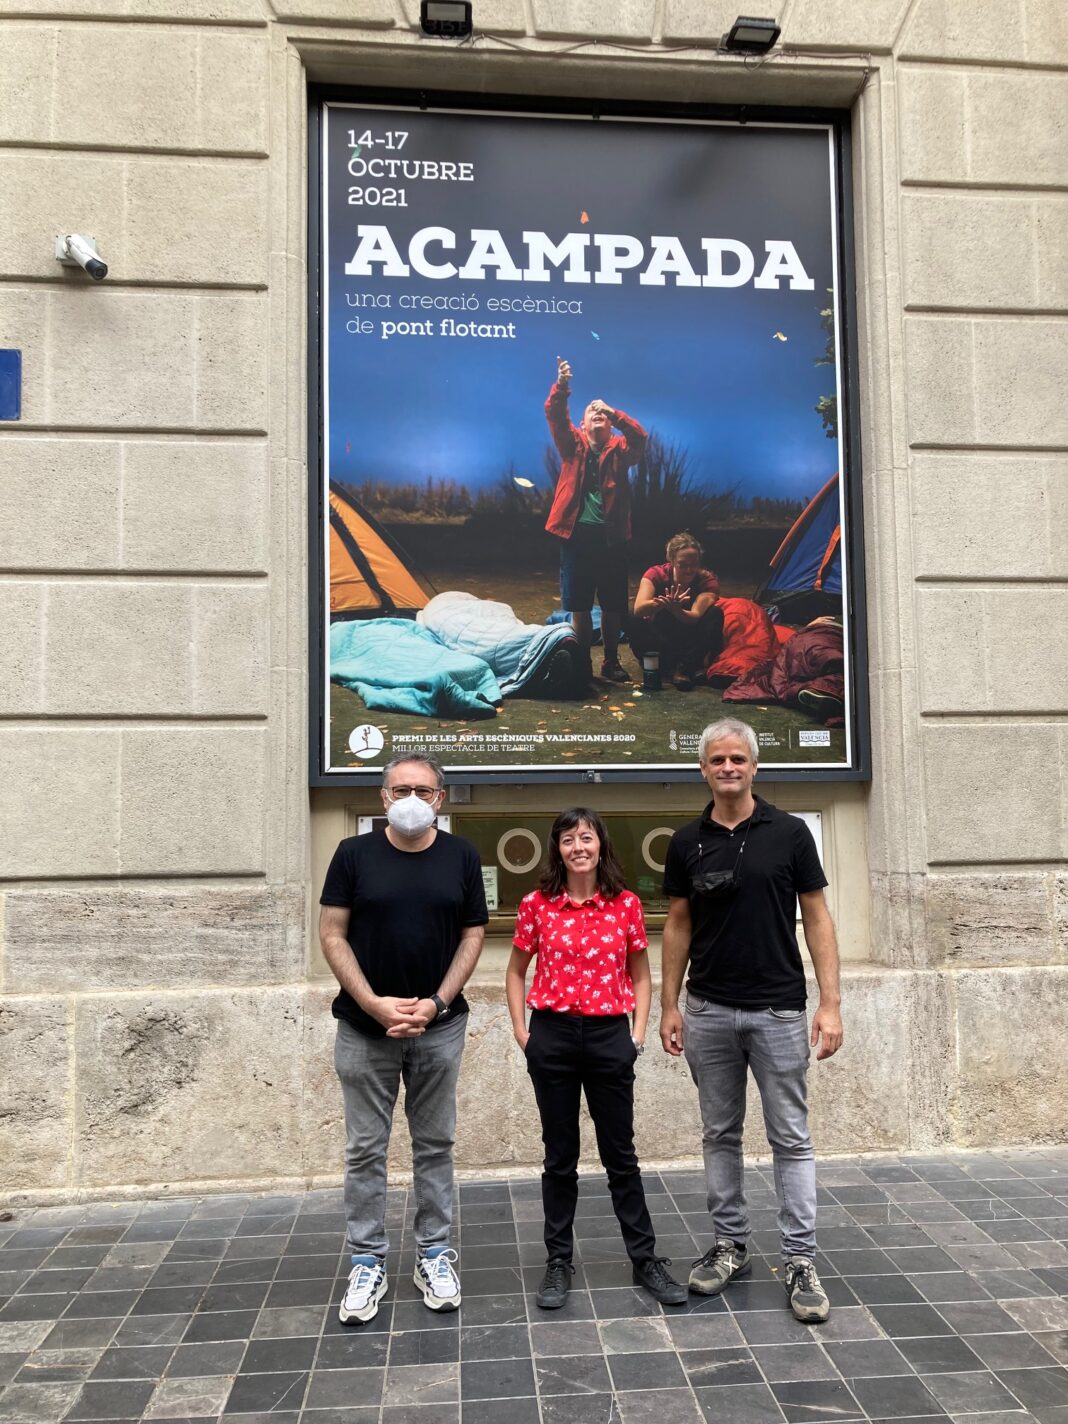 El Teatre Principal de Valencia presenta del 14 al 17 de octubre el espectáculo de la compañía valenciana Pont Flotant 'Acampada'